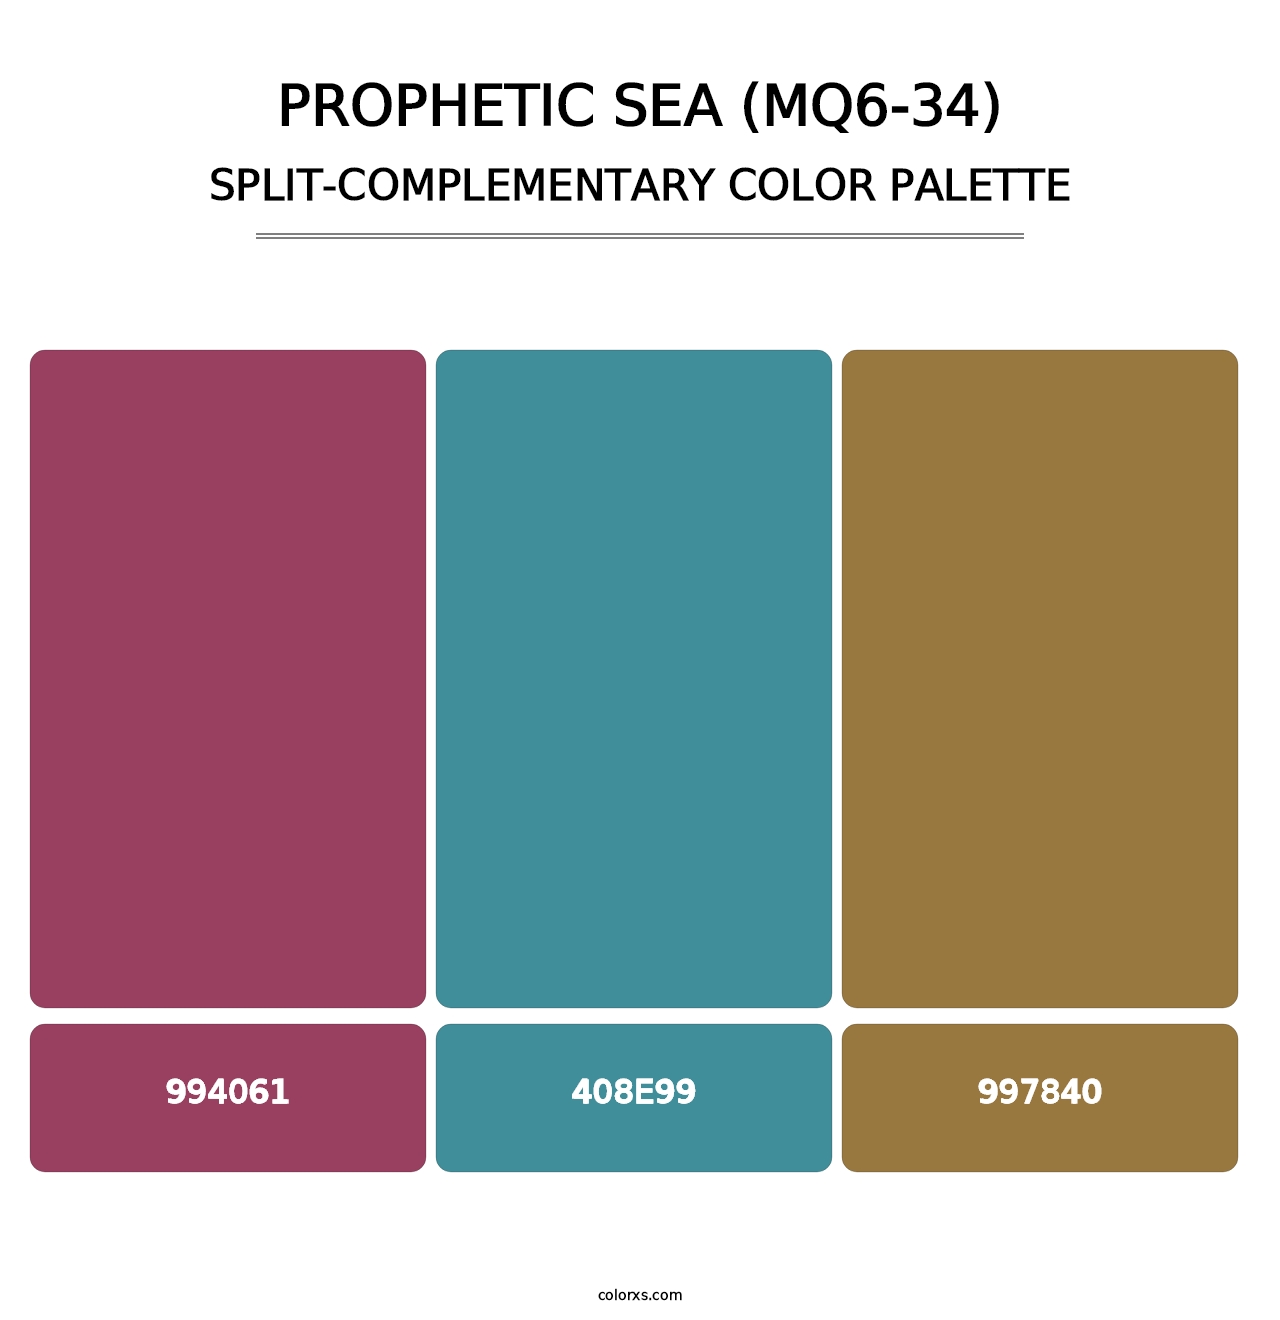 Prophetic Sea (MQ6-34) - Split-Complementary Color Palette